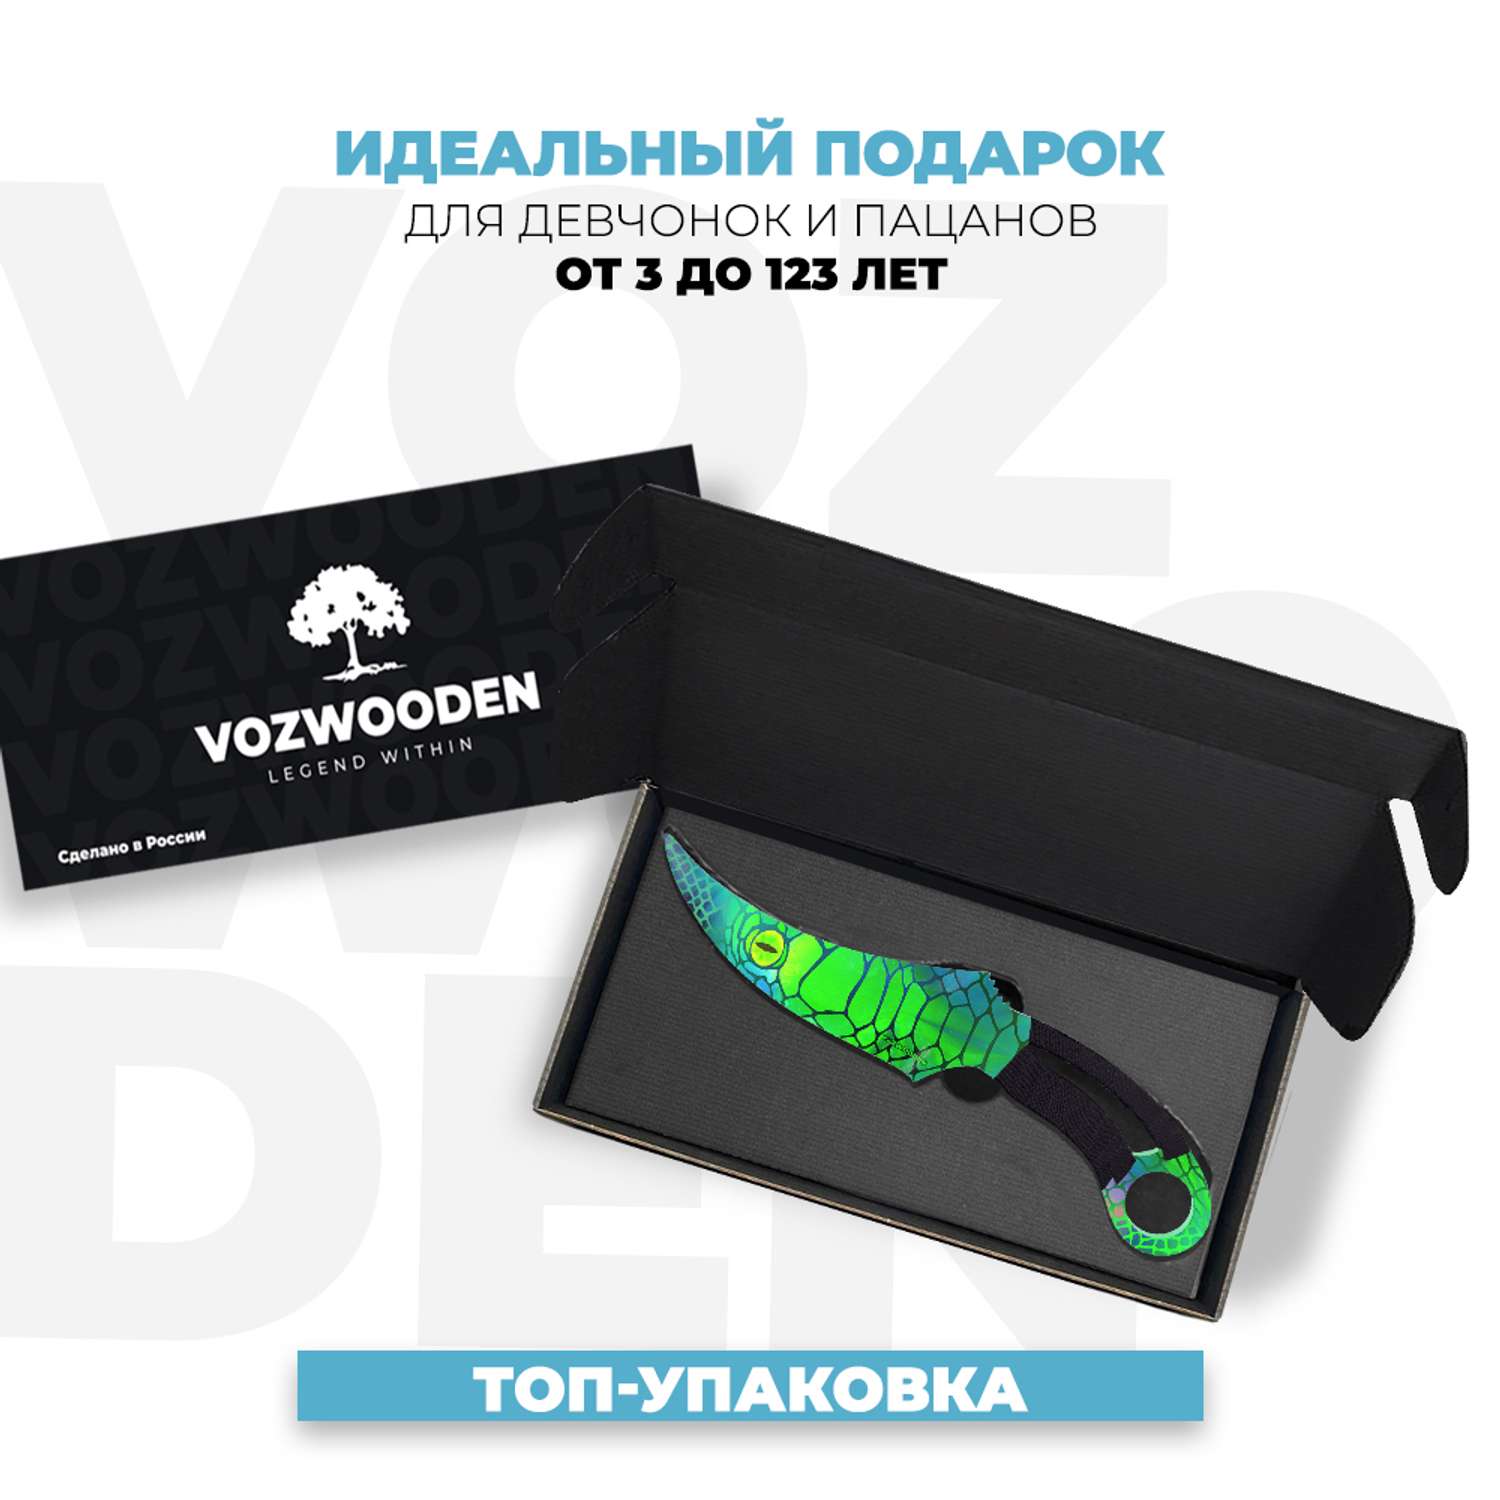 Деревянный нож VozWooden Фанг Сапфира Стандофф 2 - фото 2